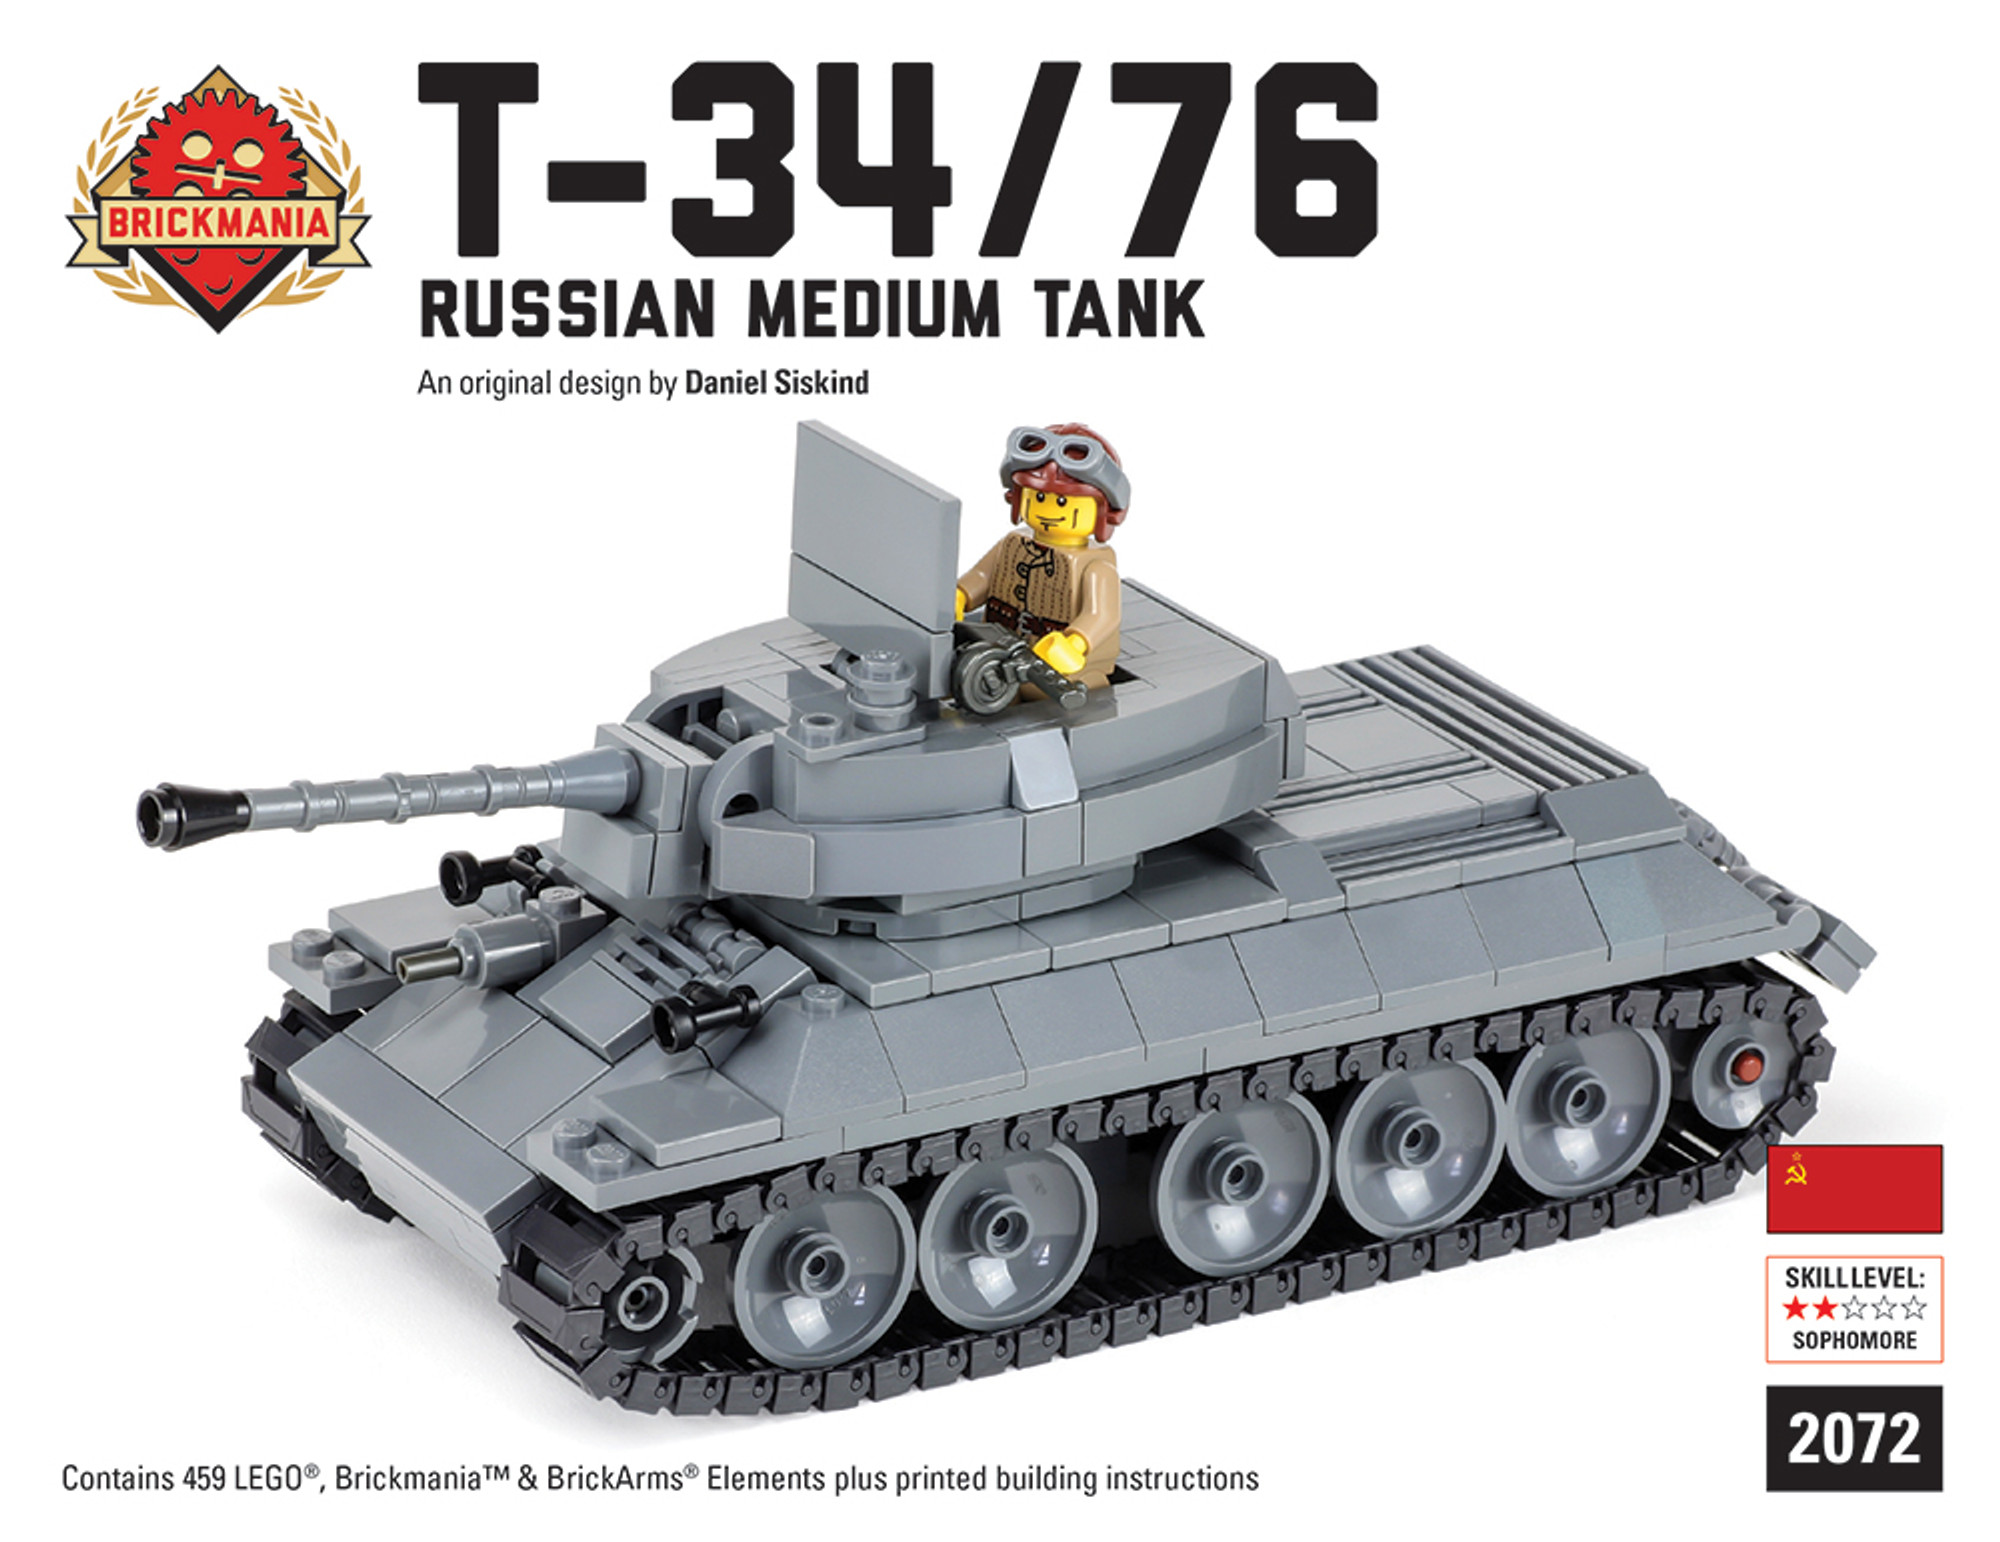 T-34/76 tank - Brickmania Toys